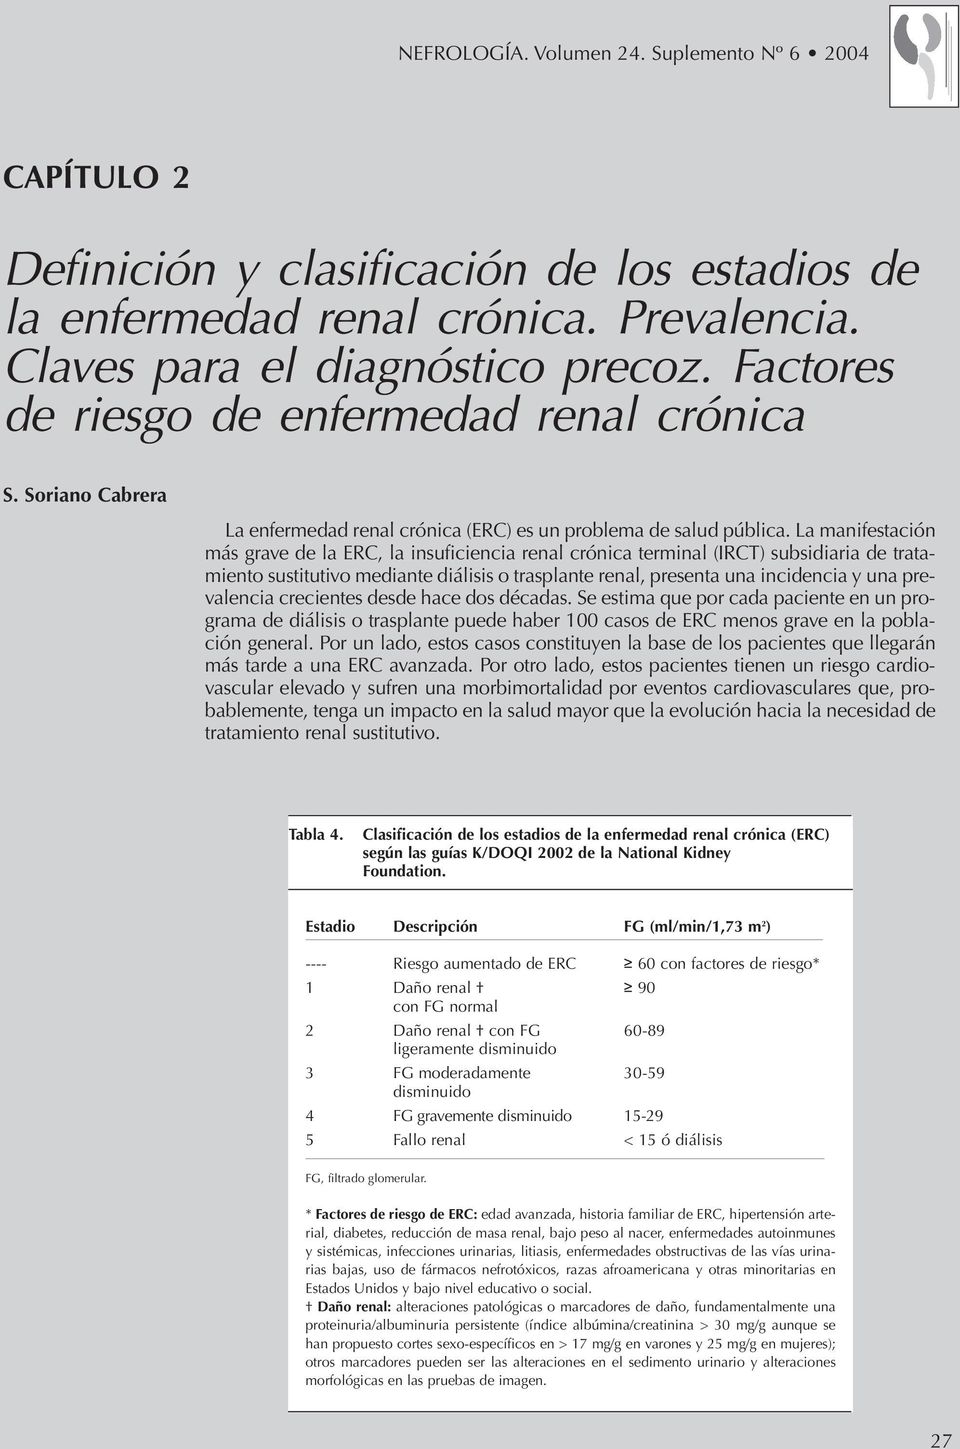 La manifestación más grave de la ERC, la insuficiencia renal crónica terminal (IRCT) subsidiaria de tratamiento sustitutivo mediante diálisis o trasplante renal, presenta una incidencia y una